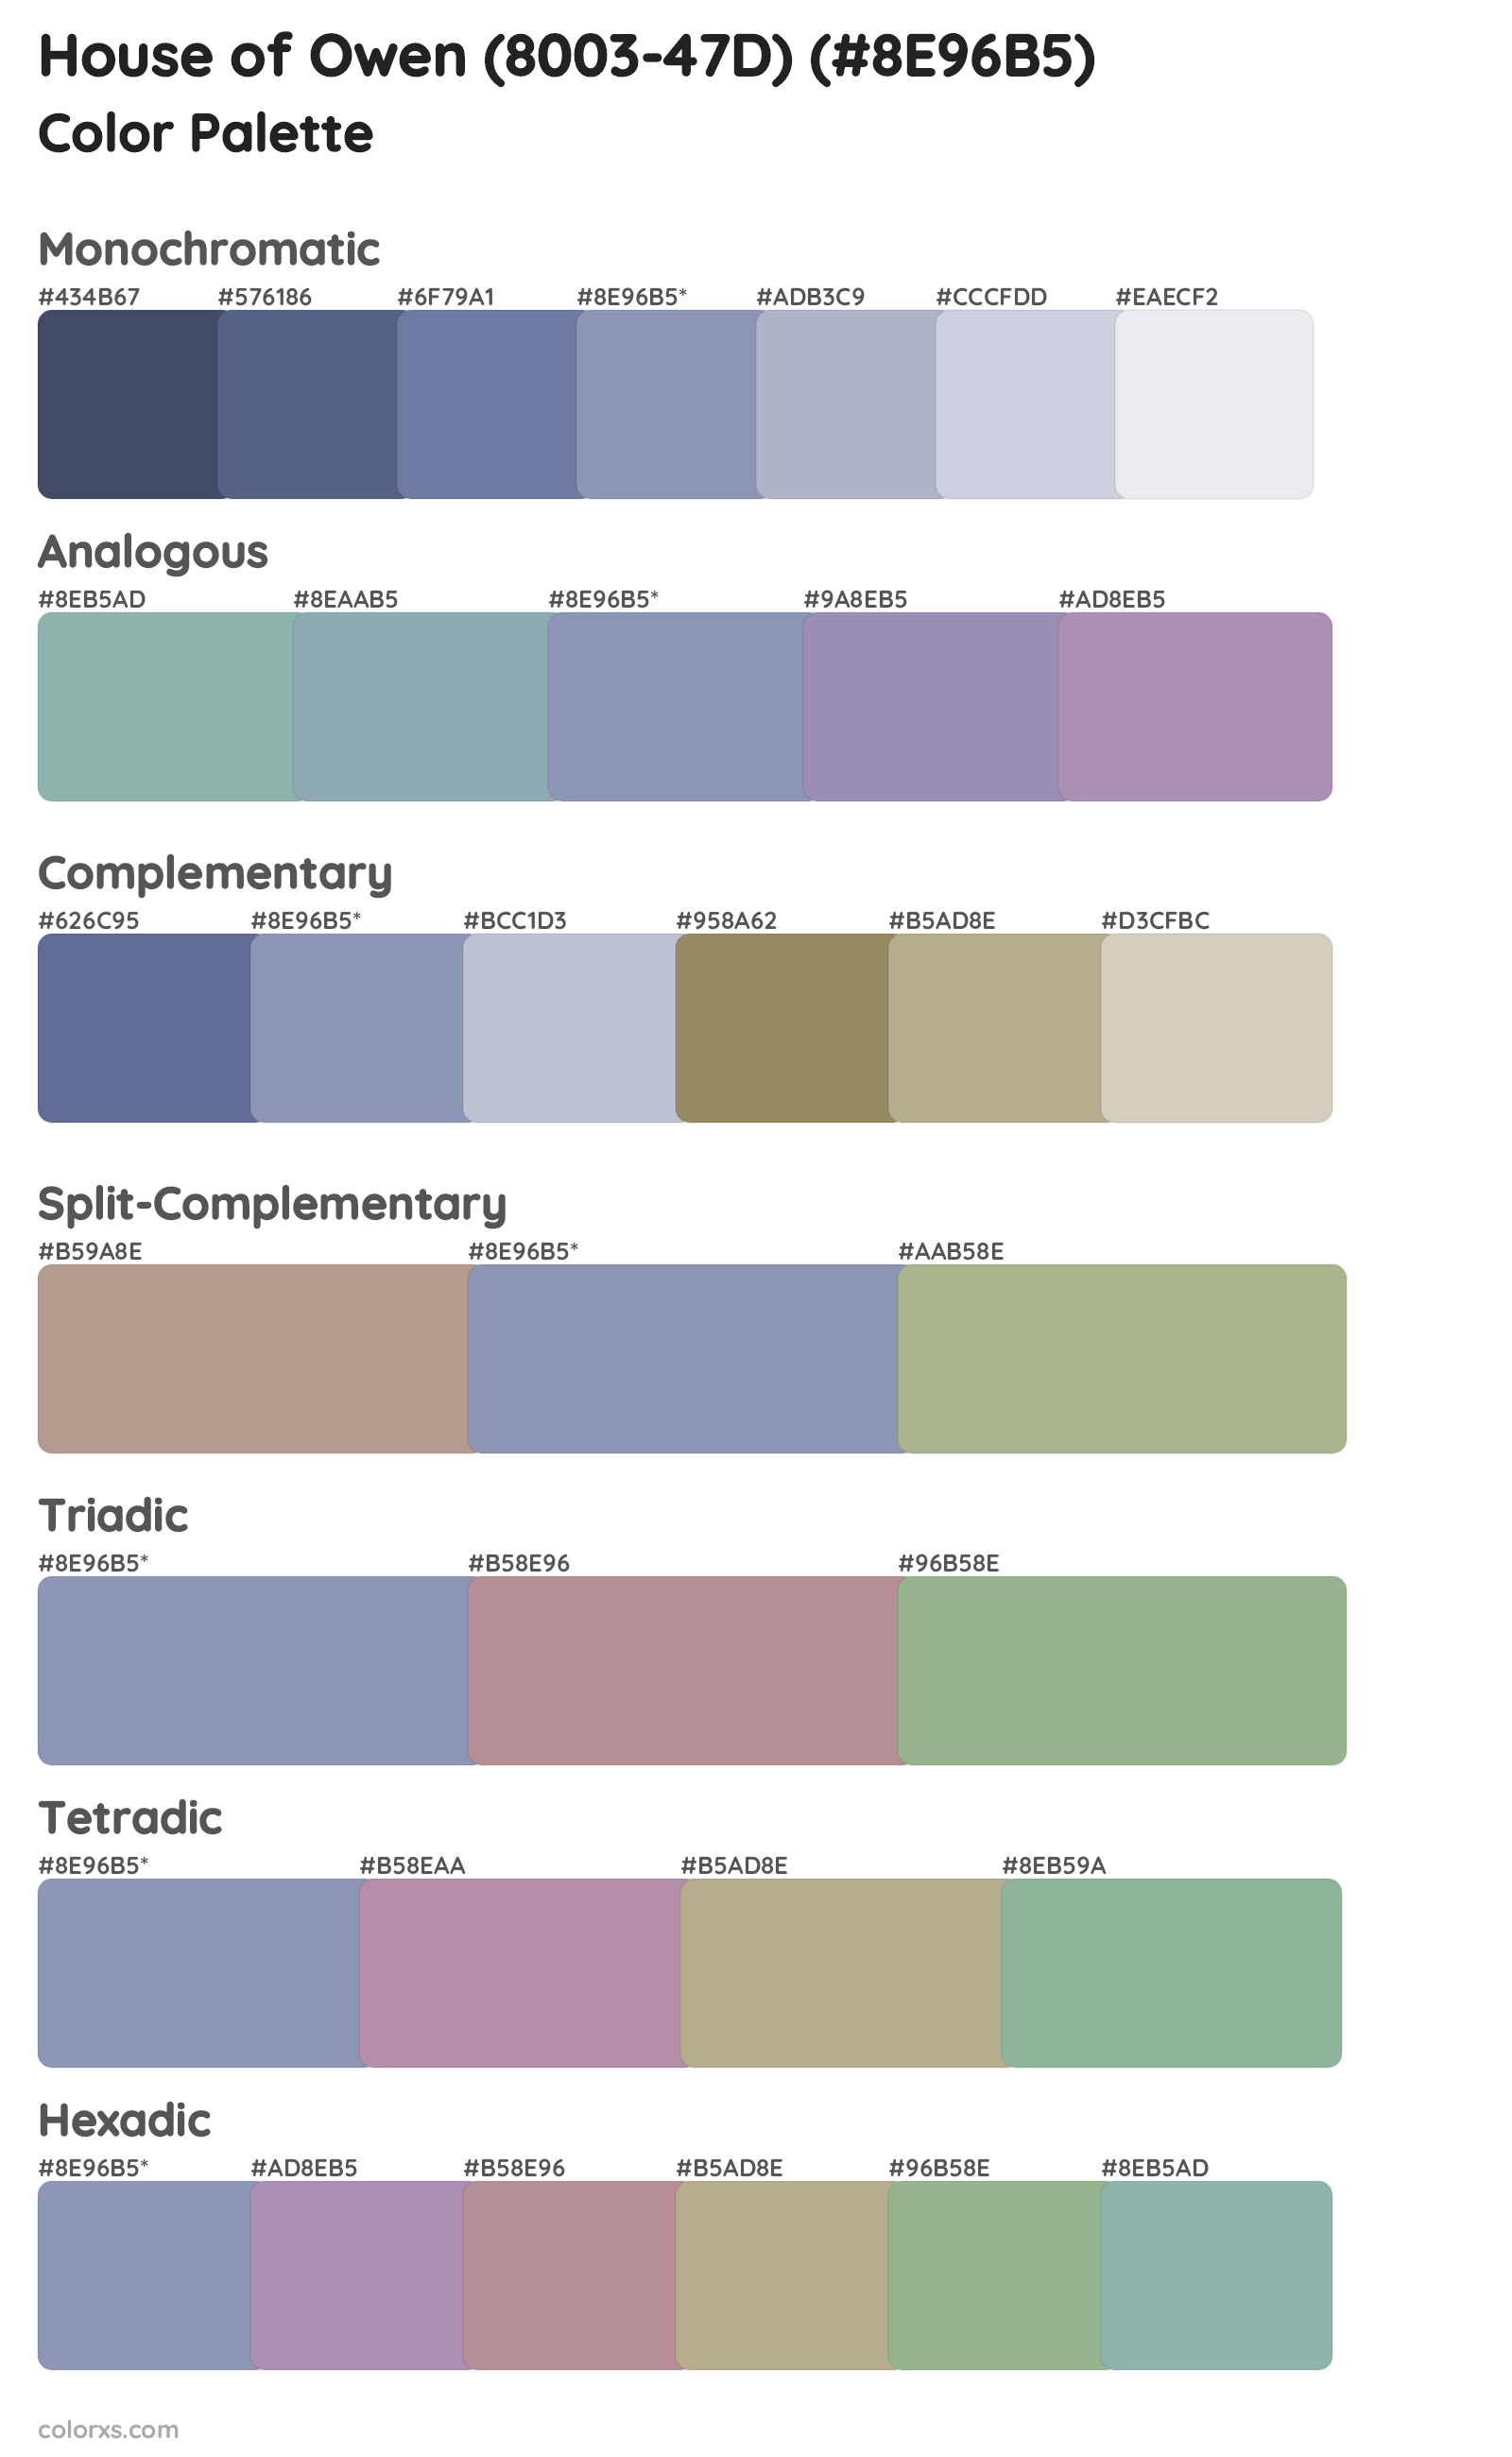 House of Owen (8003-47D) Color Scheme Palettes